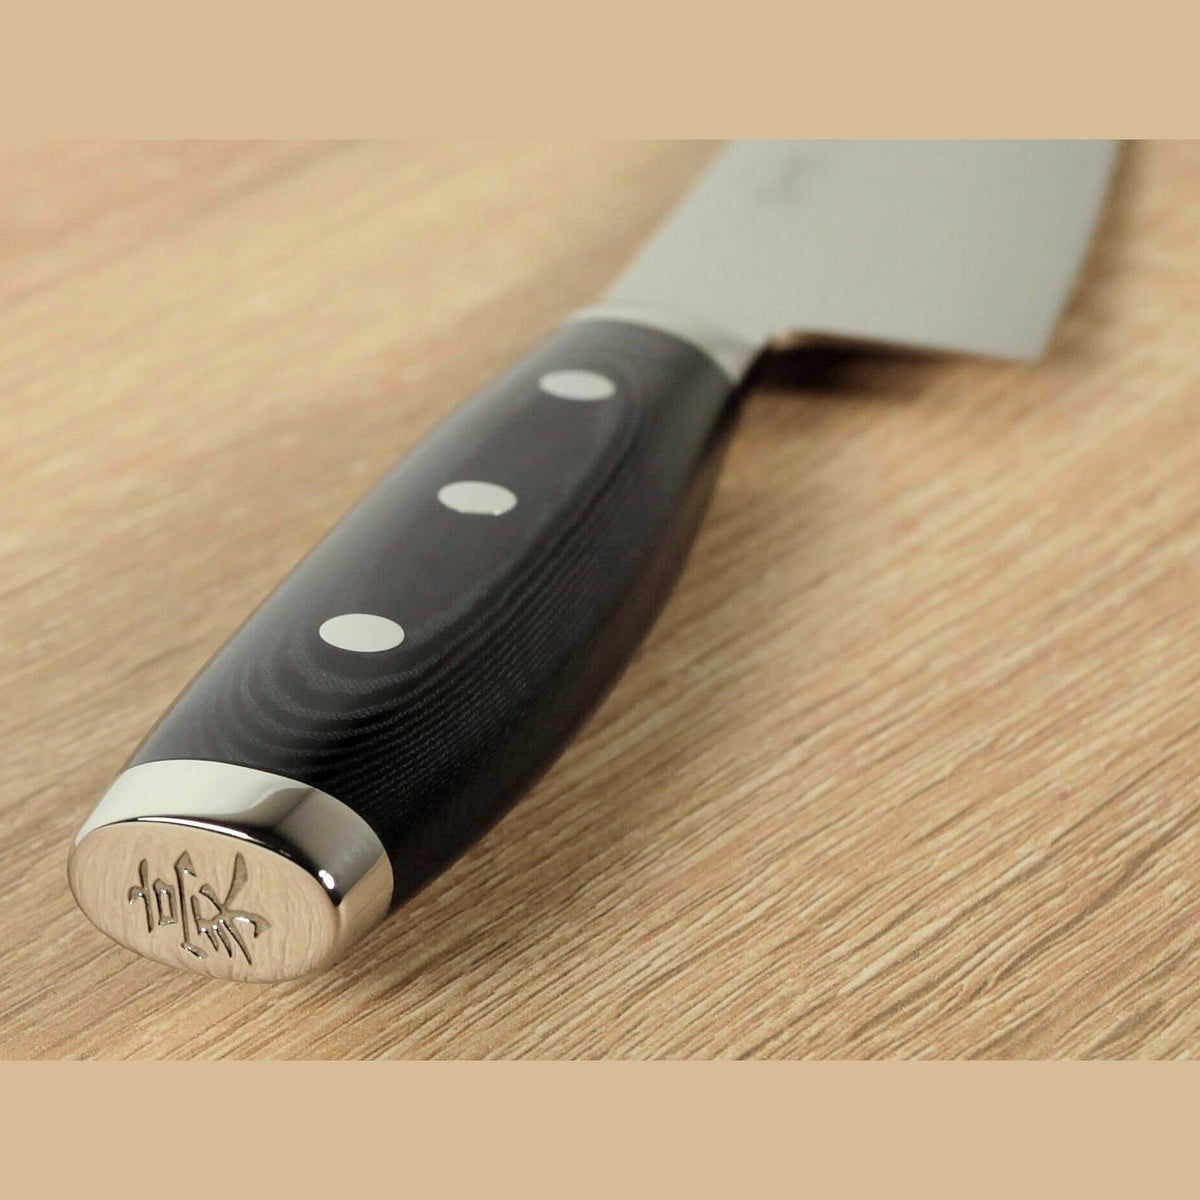 Yaxell GOU Utility Knife, 12 cm